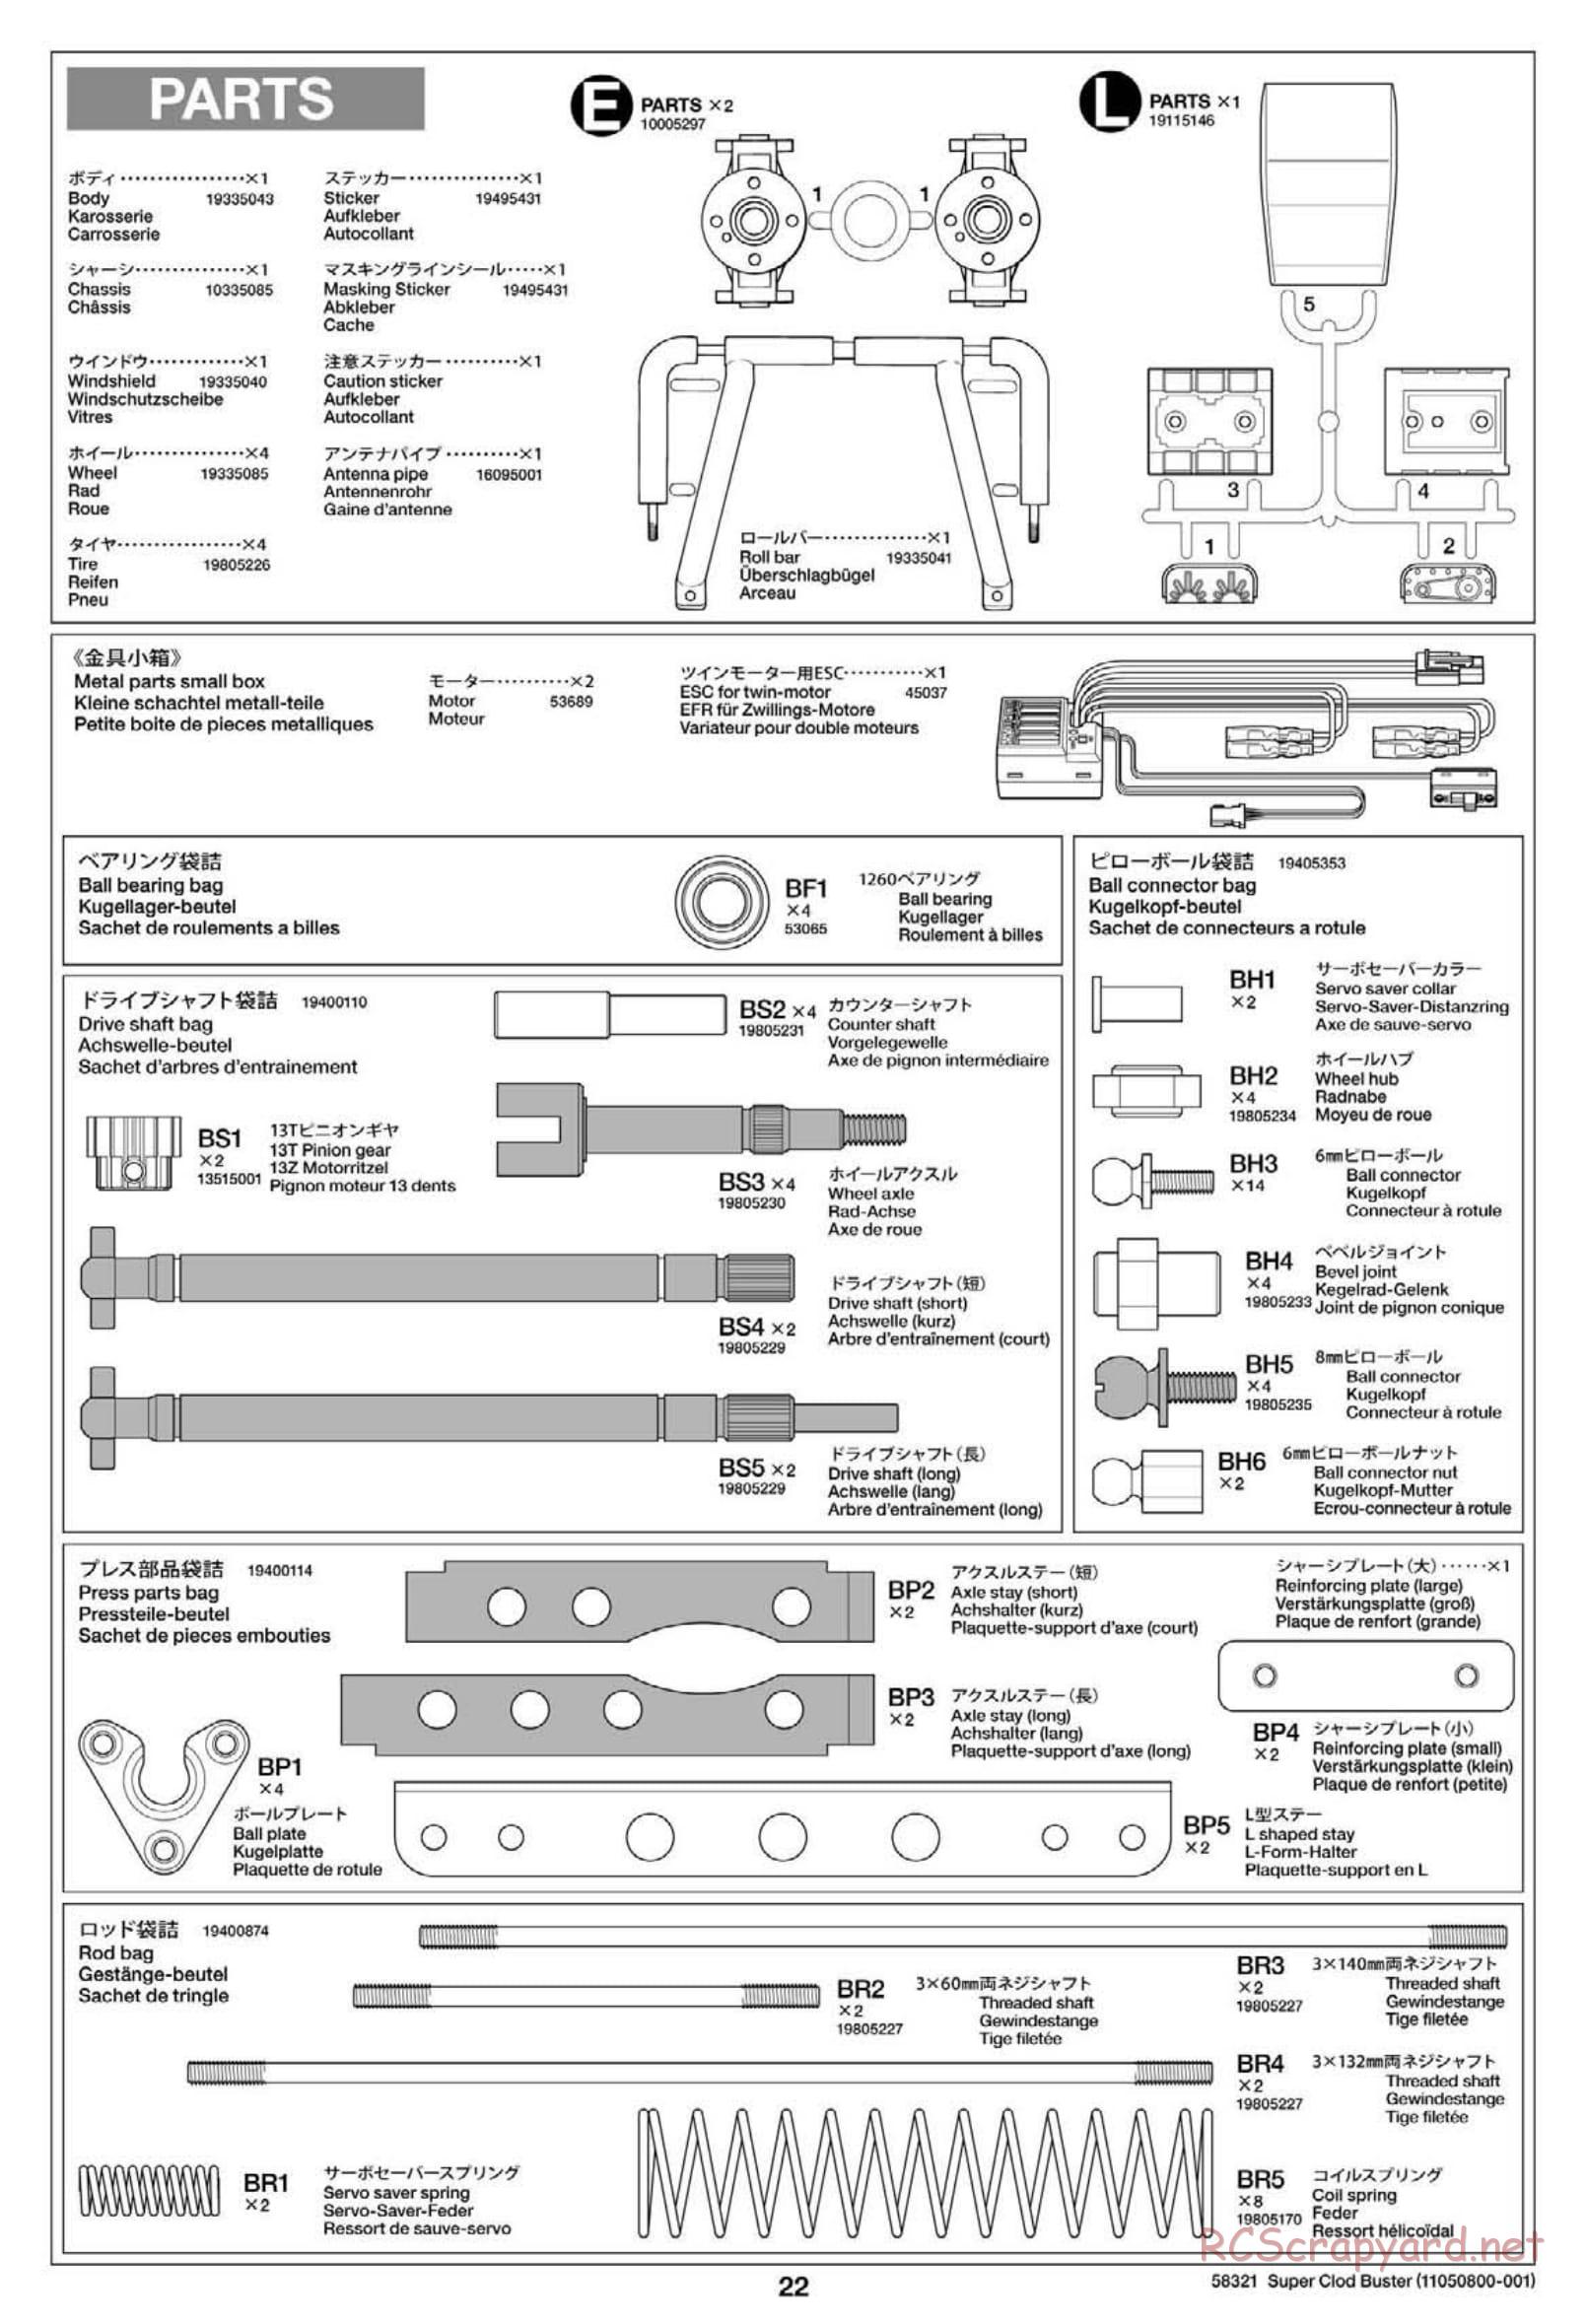 Tamiya - Super Clod Buster Chassis - Manual - Page 22